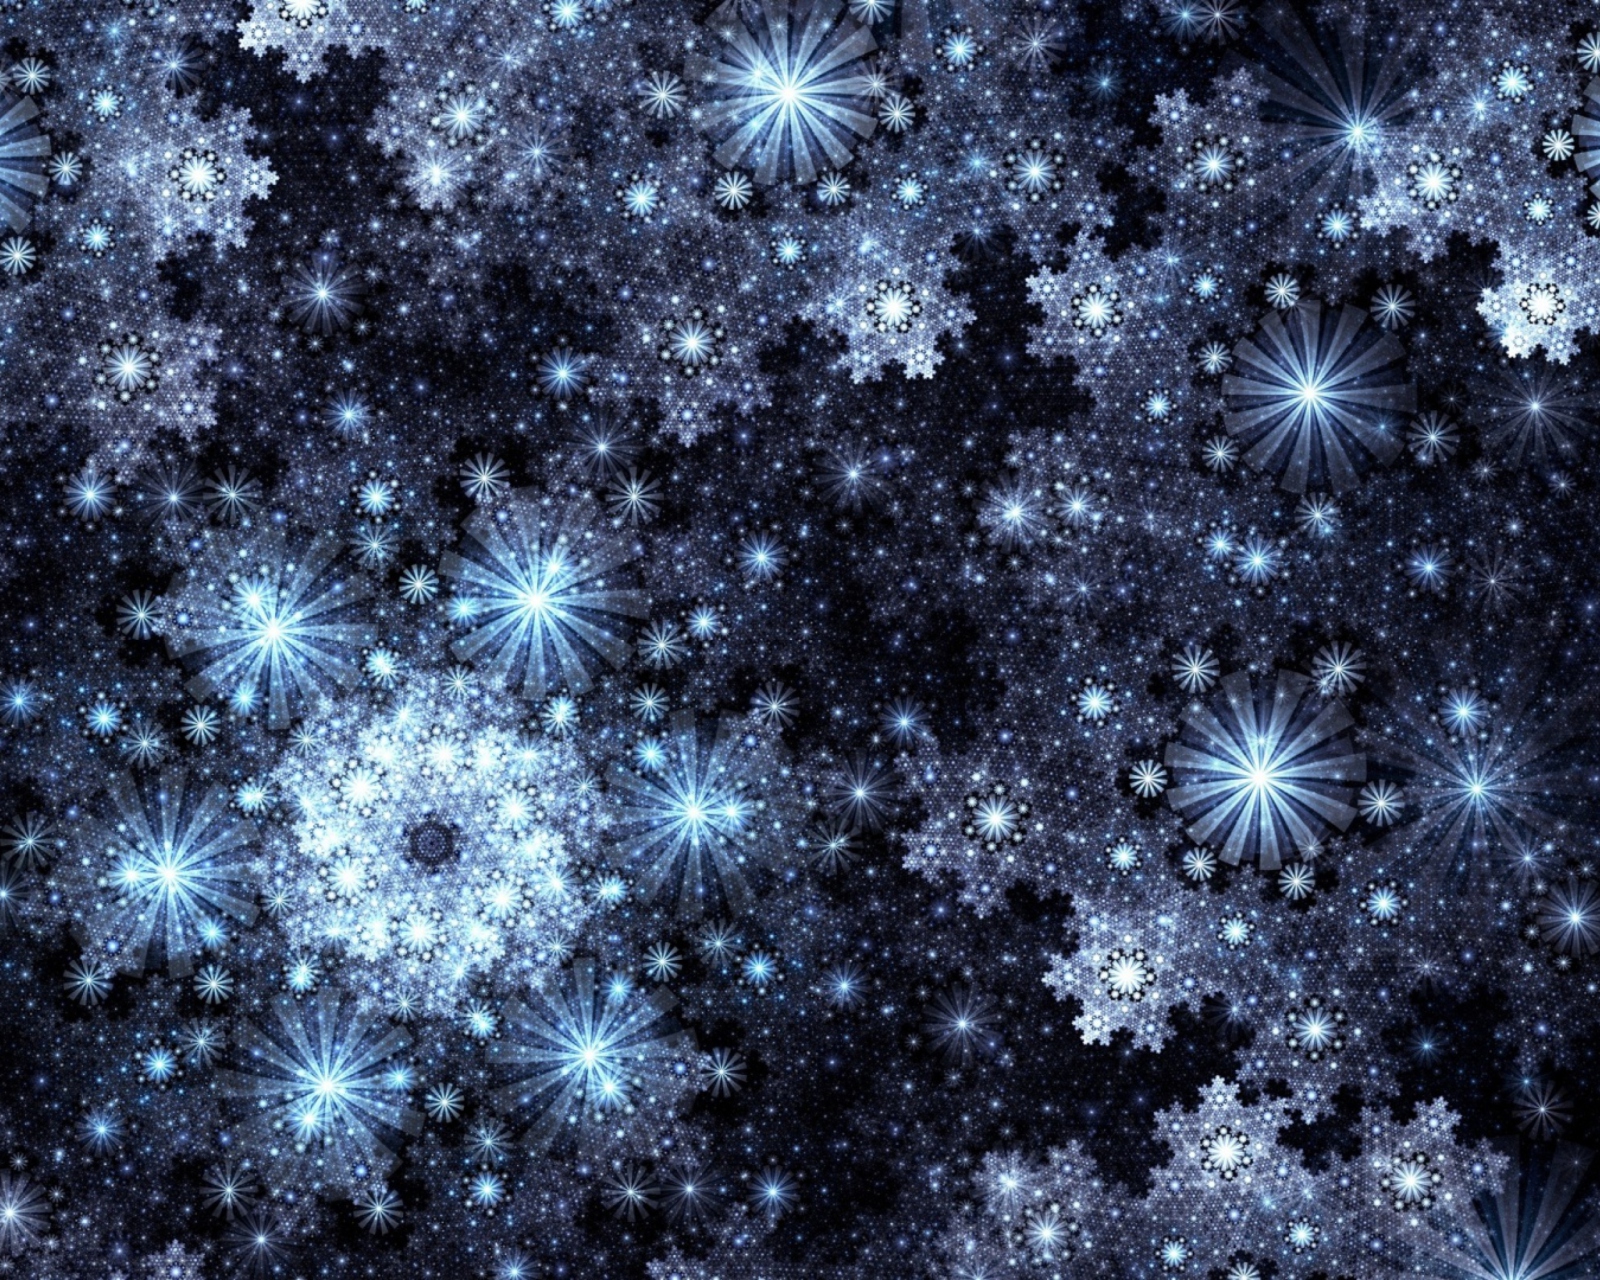 Das Snowflakes Wallpaper 1600x1280